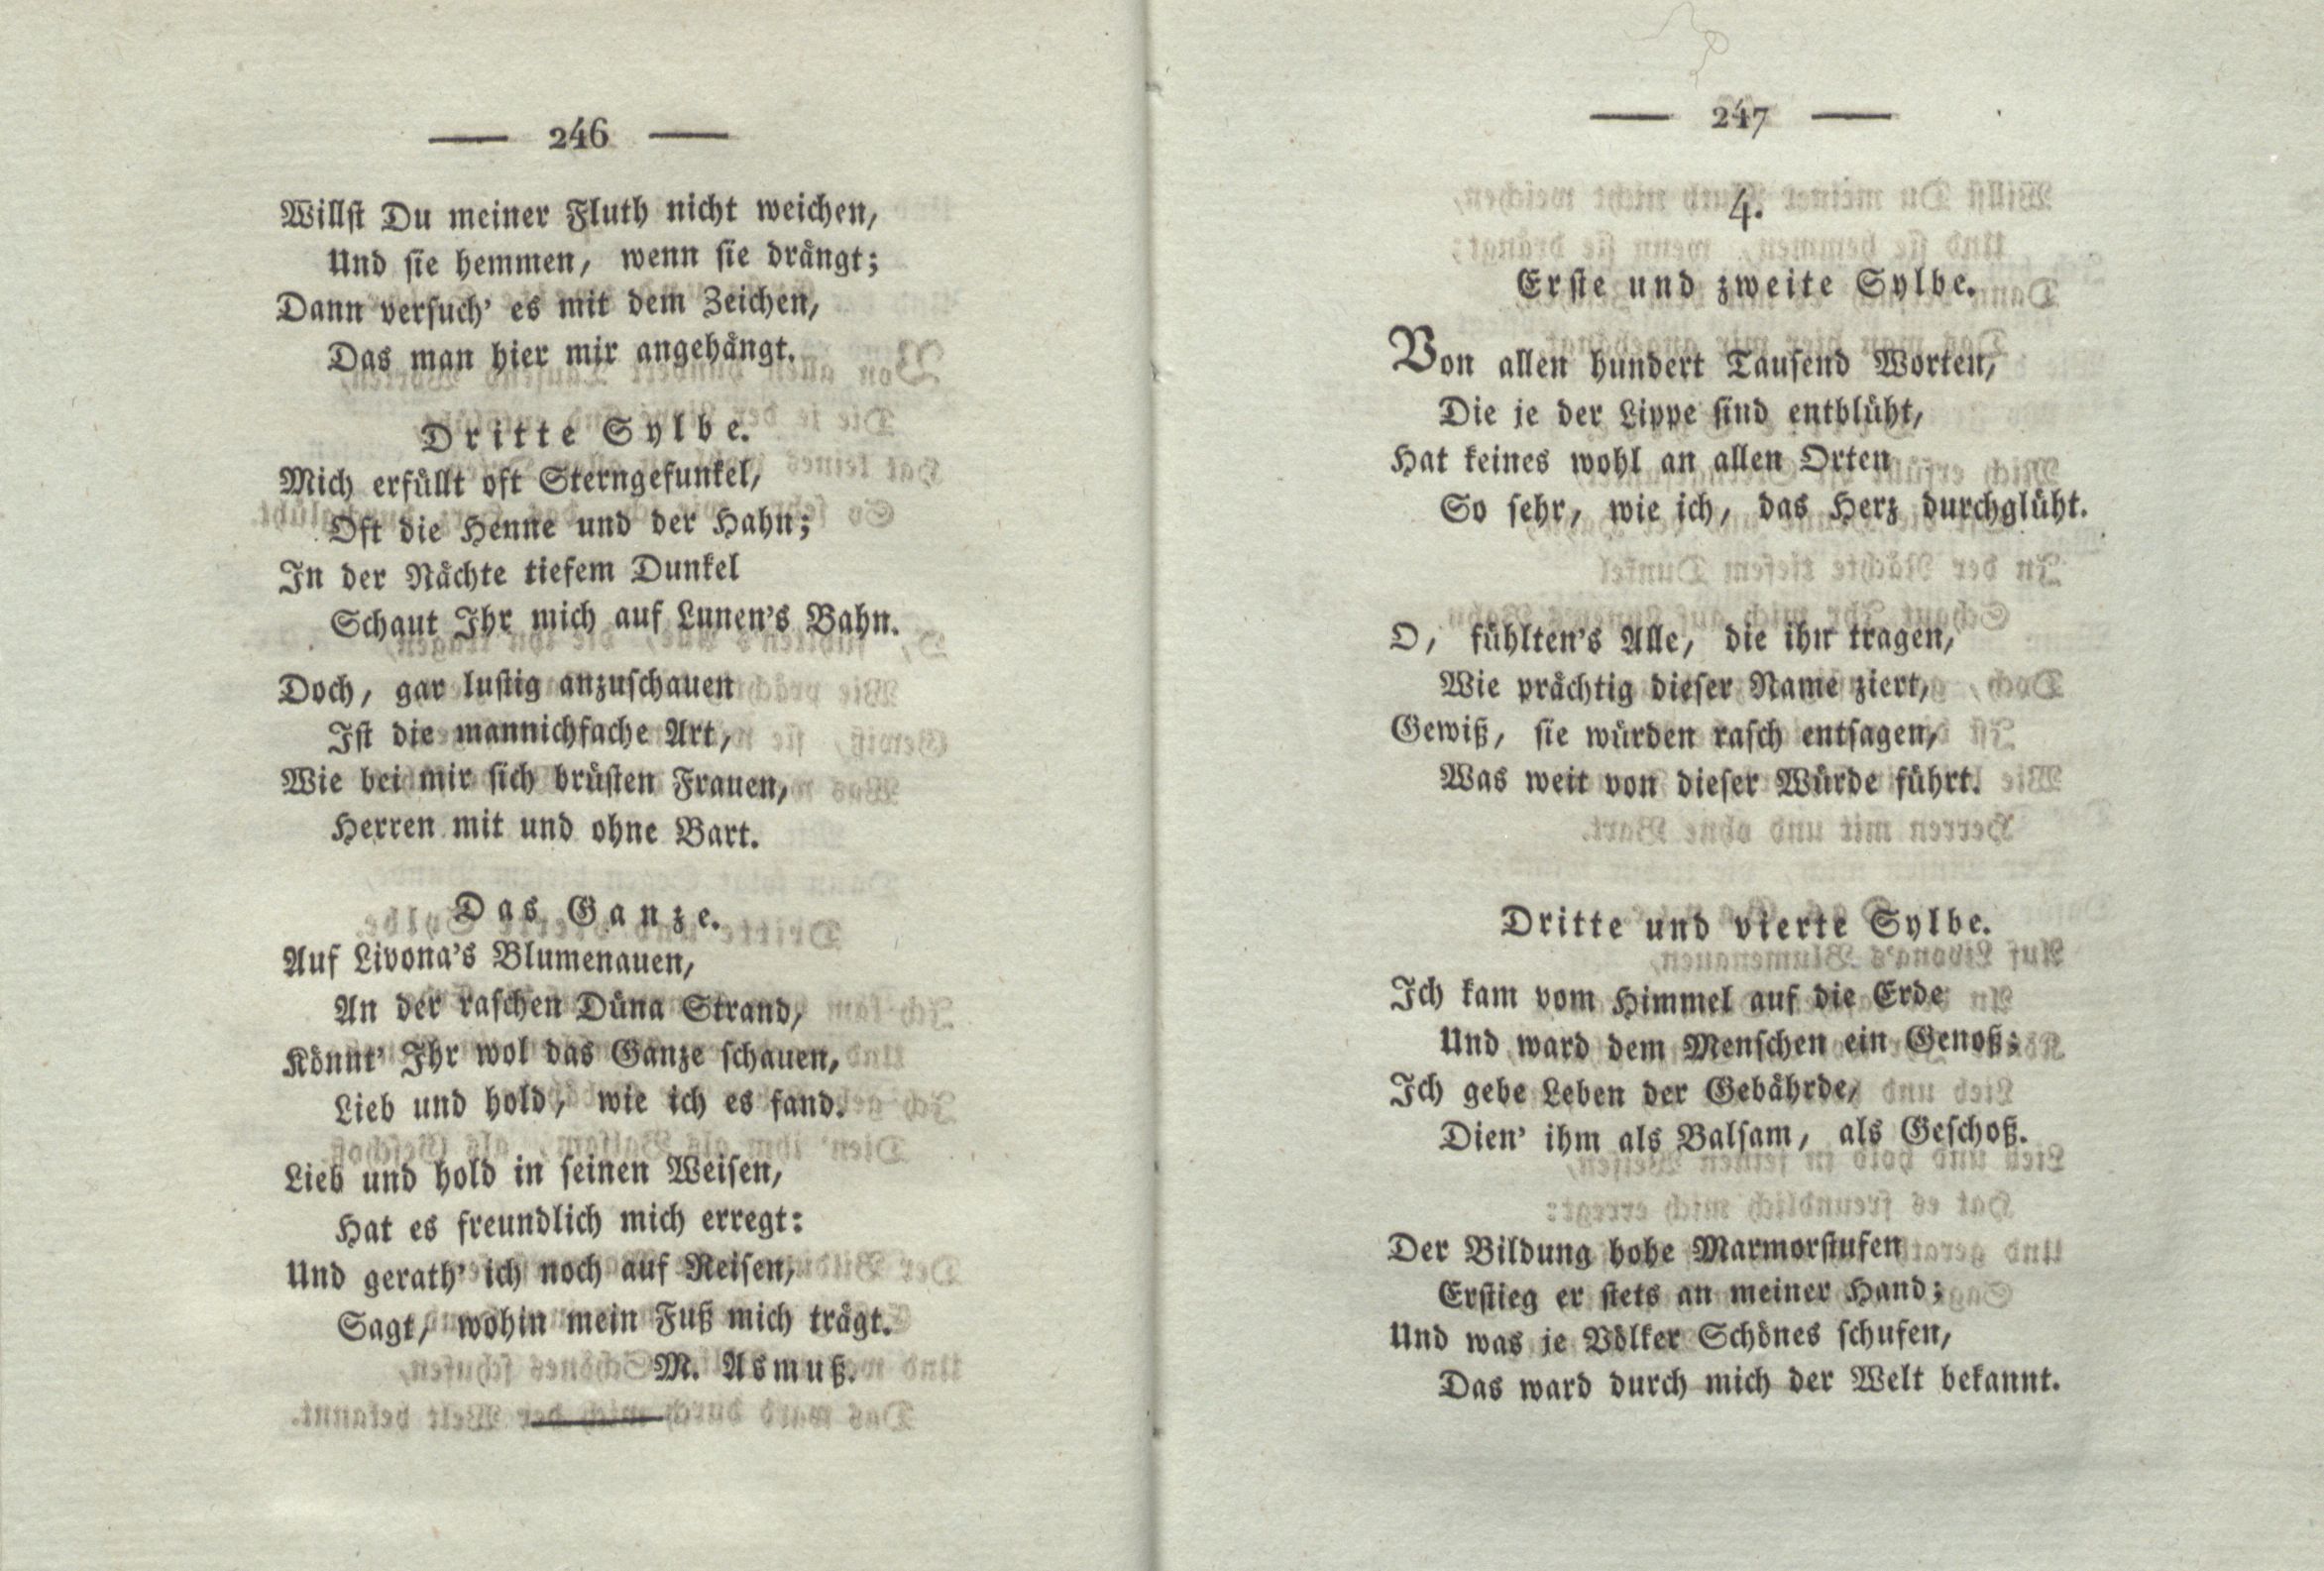 Von allen hundert Tausend Worten ... (1825) | 1. (246-247) Main body of text